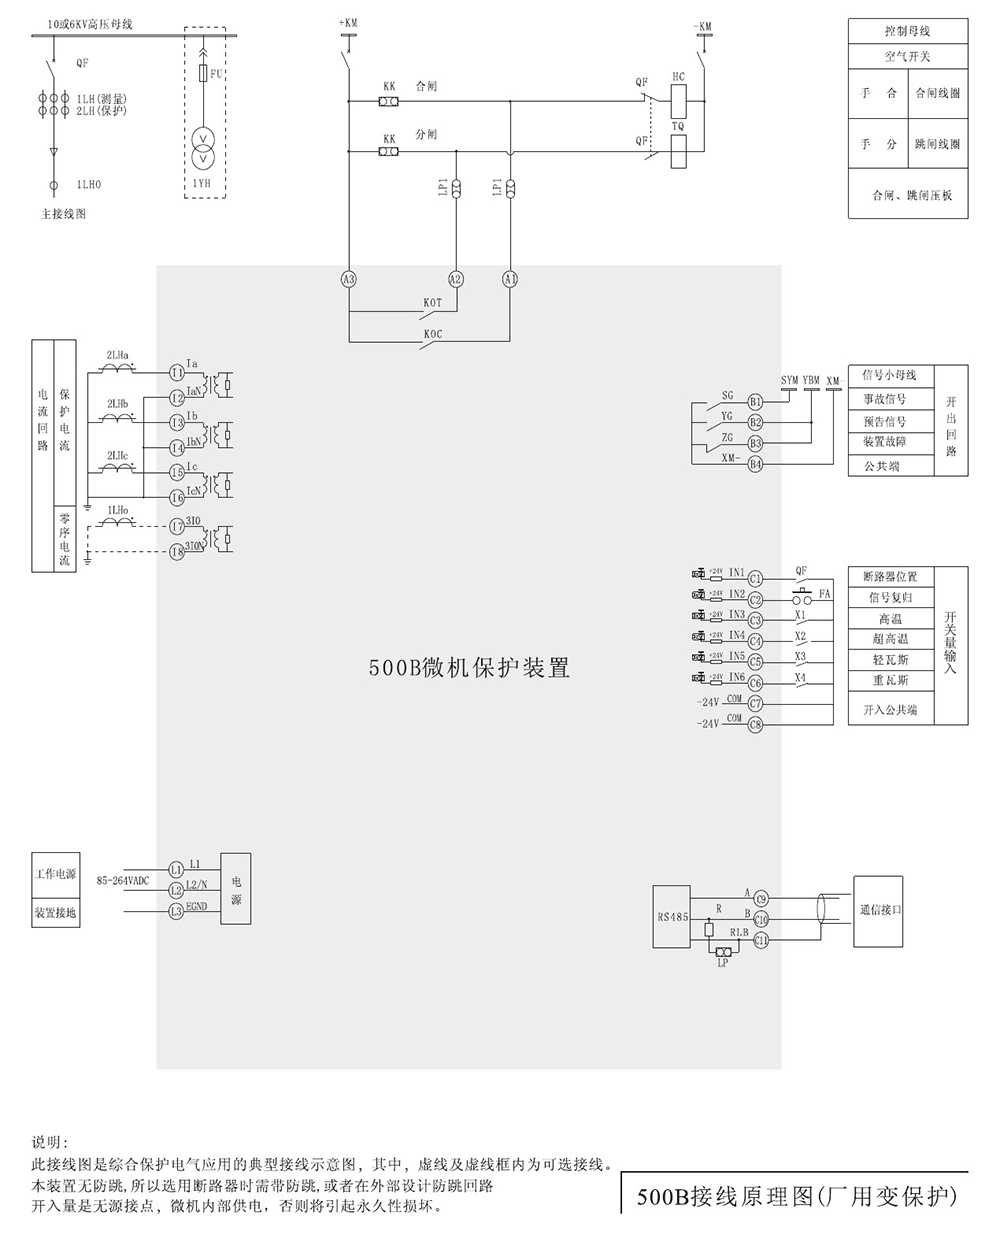 SJP-500B迷你微机保护装置产品参数图片二